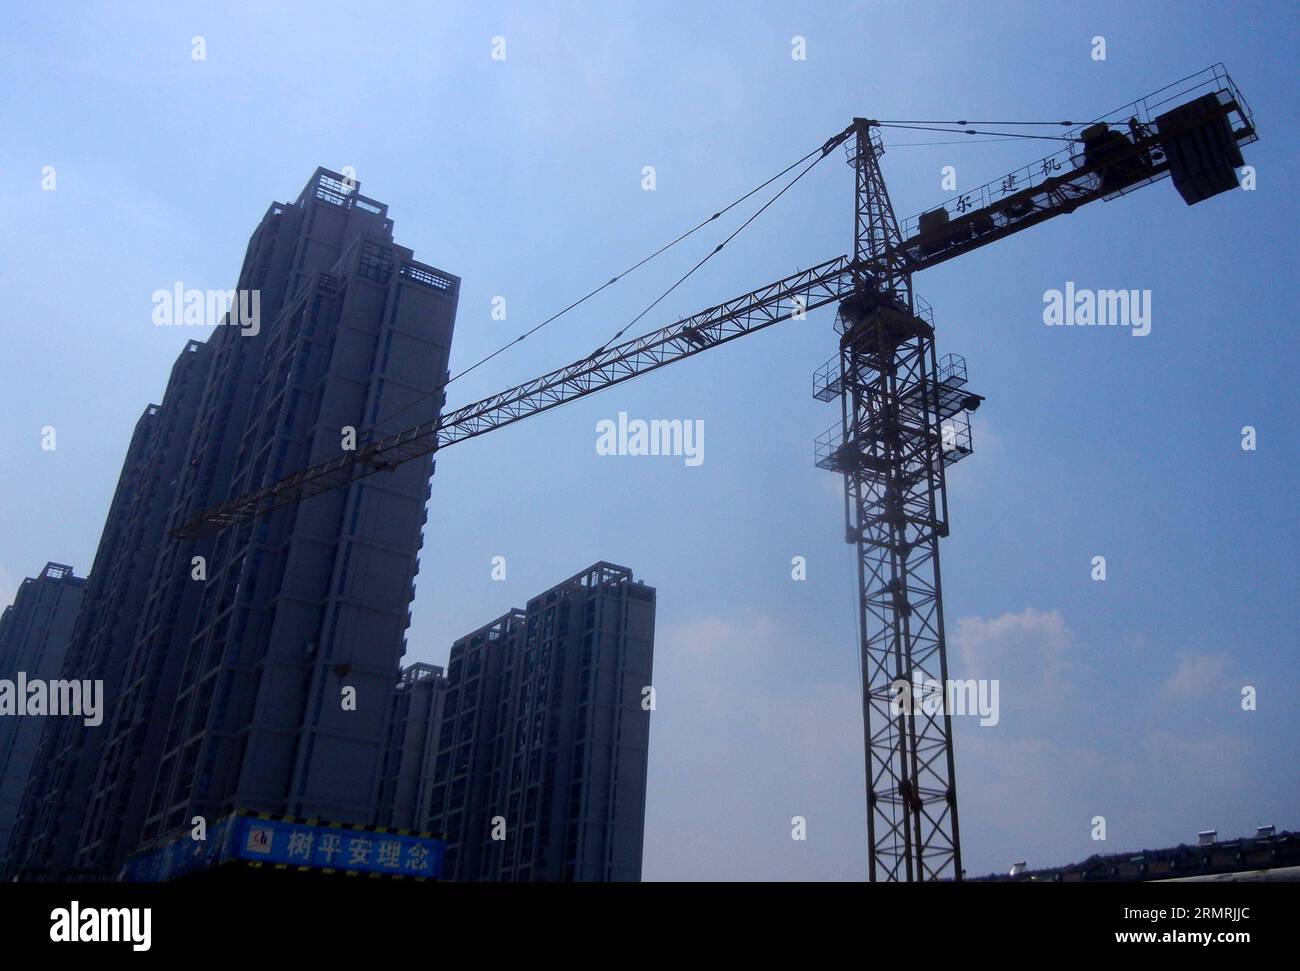 Das Foto vom 22. Juli 2014 zeigt die Wohngebäude, die in der Stadt Suzhou in der ostchinesischen Provinz Jiangsu im Bau sind. Die Wohnungsbaubehörden von Suzhou haben kürzlich ihre Kaufbeschränkung gelockert und es Käufern, egal ob sie vor Ort registriert sind oder nicht, ermöglicht, mehr Häuser von über 90 Quadratmetern zu kaufen. (Xinhua/Wang Jiankang) (ry) CHINA-JIANGSU-SUZHOU-HOME PURCHASE POLICY (CN) PUBLICATIONxNOTxINxCHN Foto vom 22. Juli 2014 zeigt die Wohngebäude, die in der ostchinesischen Provinz Suzhou S Jiangsu im Bau sind. Die Wohnbehörden von Suzhou haben ihren Home Purcha gelockert Stockfoto